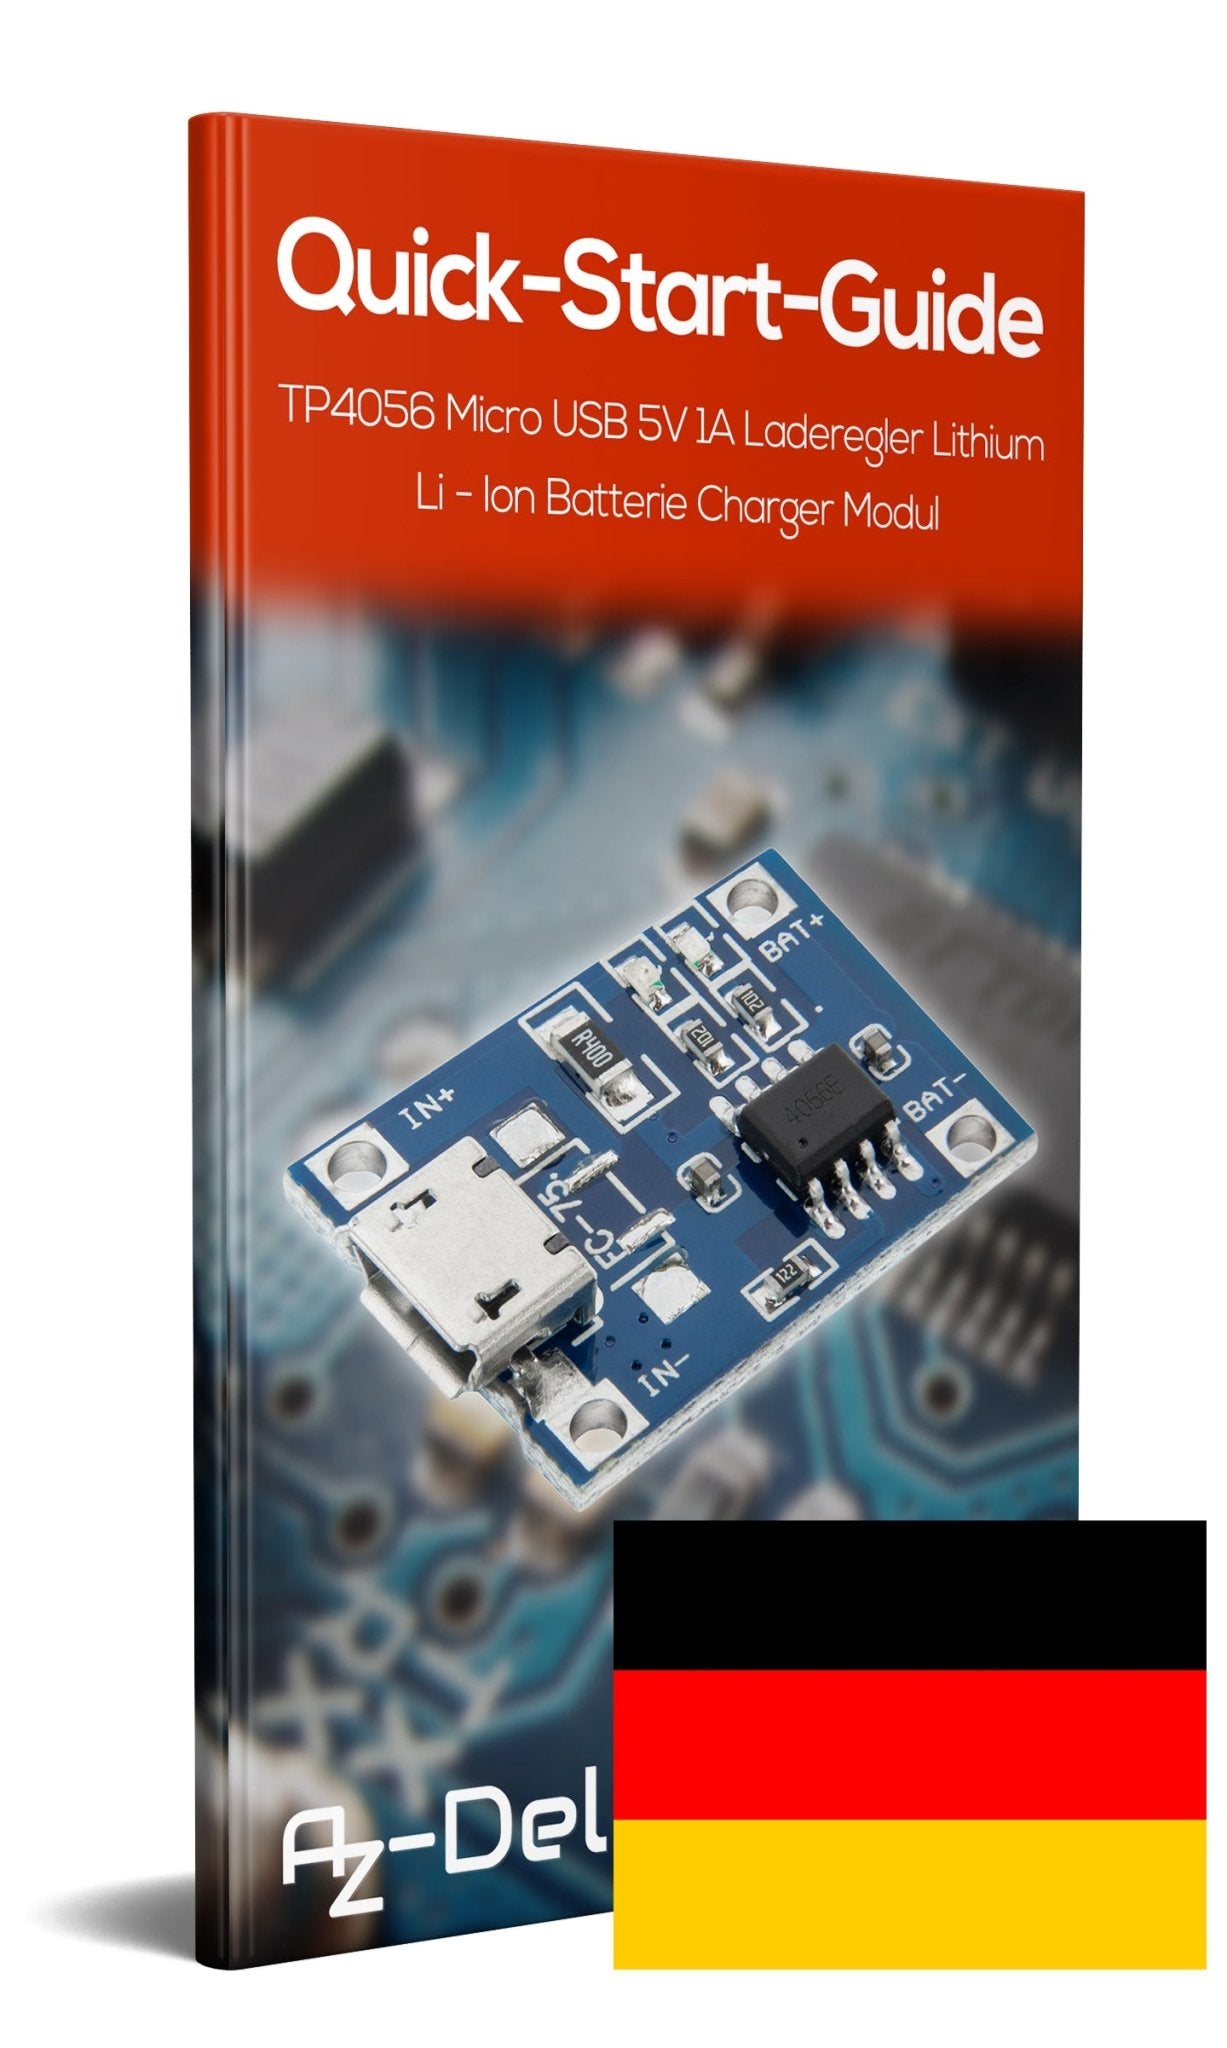 TP4056 Mini USB 5V 1A Régulateur de charge Lithium Li - Ion Batterie C